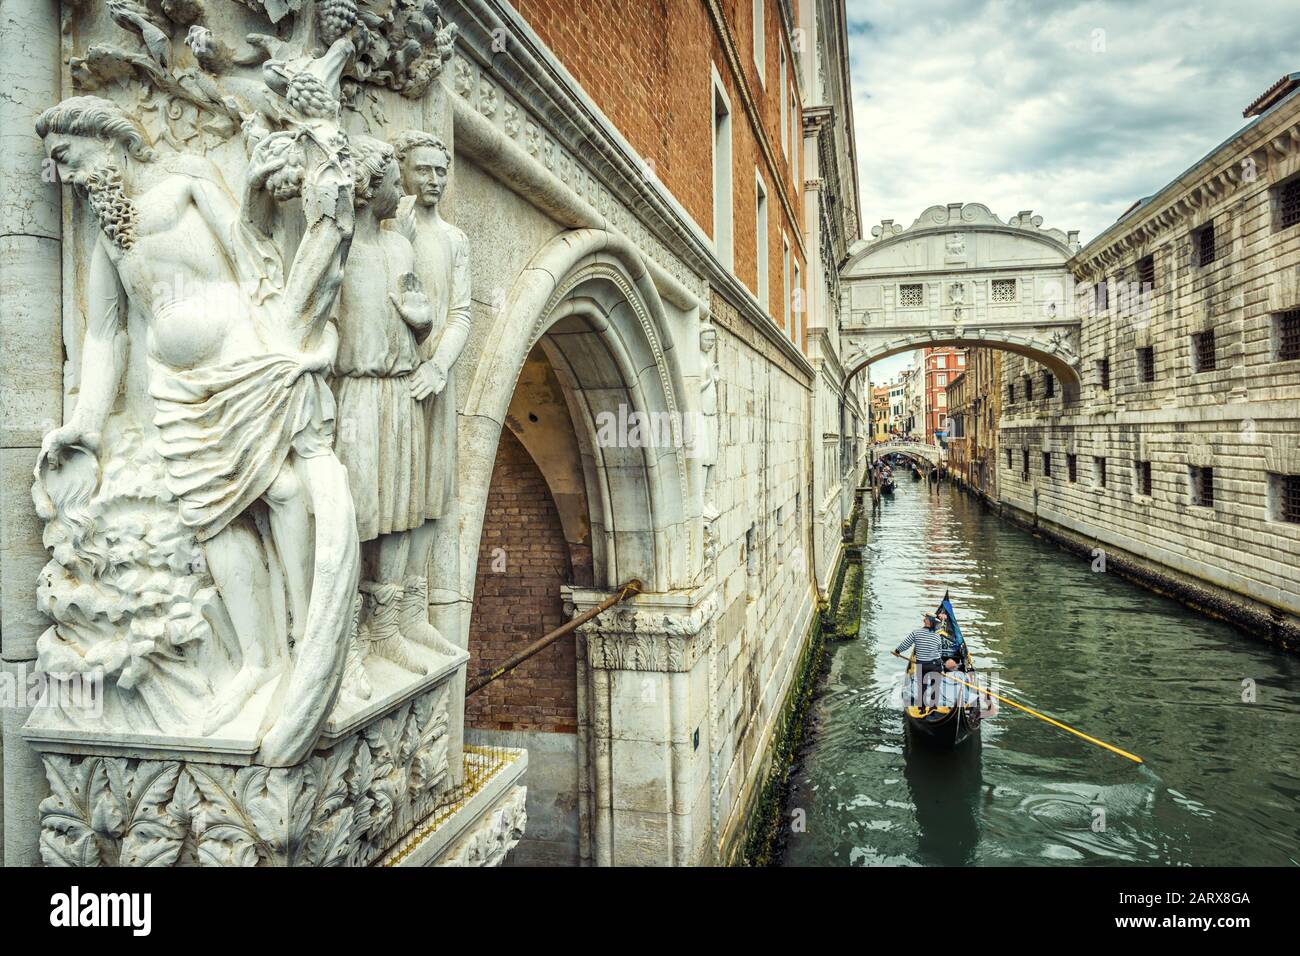 Venezia paesaggio urbano con scultura antica, Italia. Le gondole turistiche navigano sotto il famoso Ponte dei Sospiri. E' un punto di riferimento di Venezia. Romantico viaggio in acqua Foto Stock